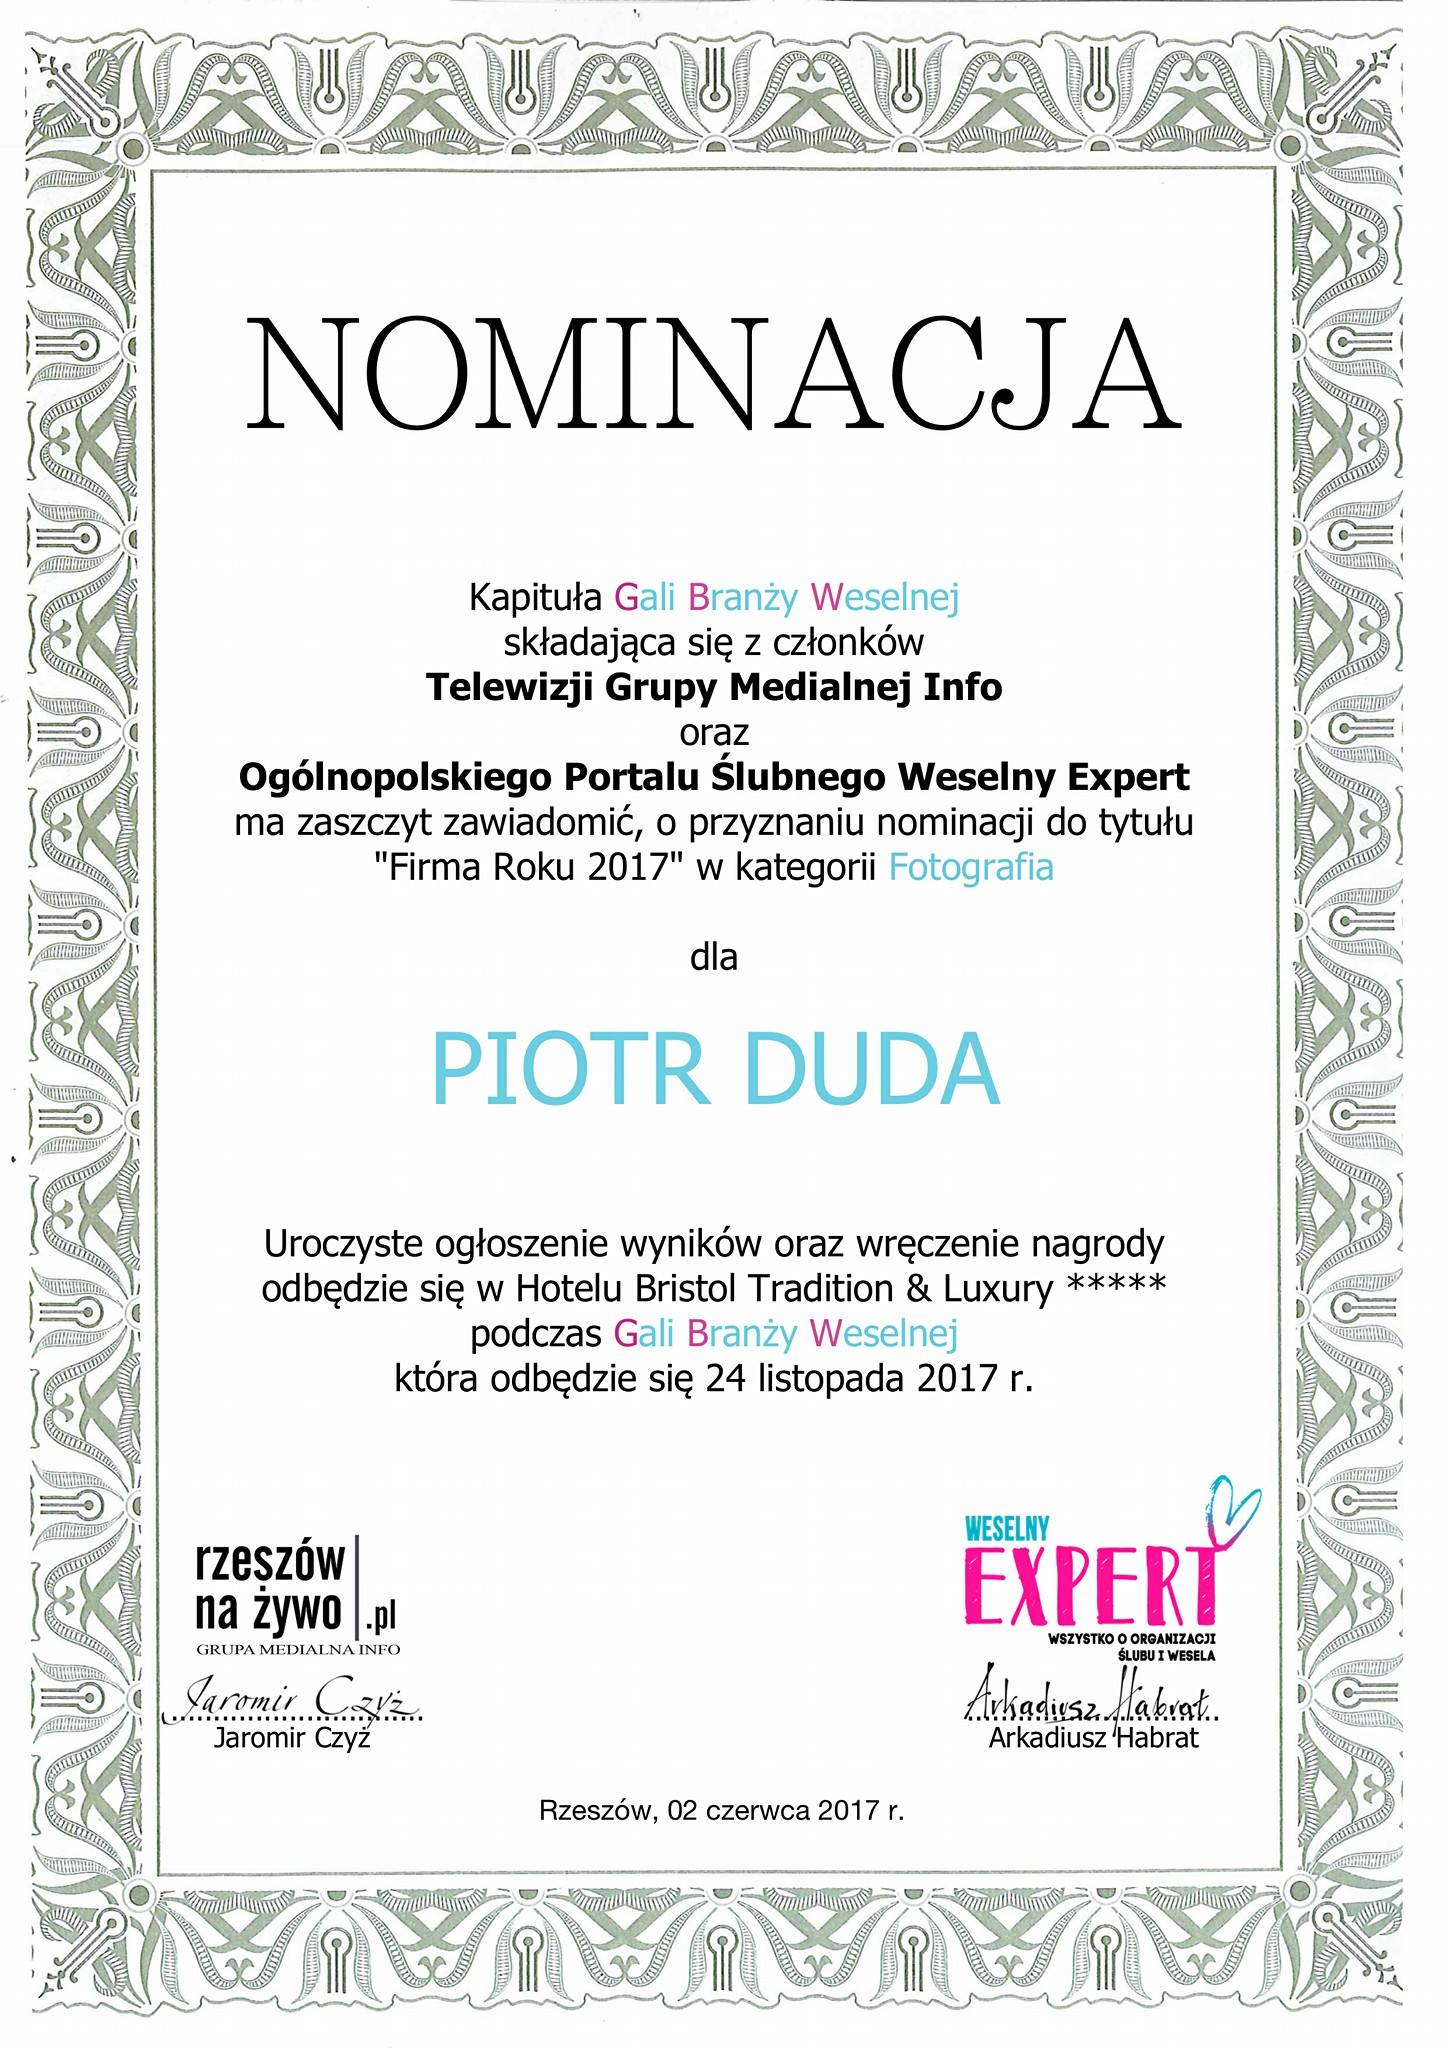 Piotr Duda nominowany do tytułu firma roku 2017 w kategorii fotografia